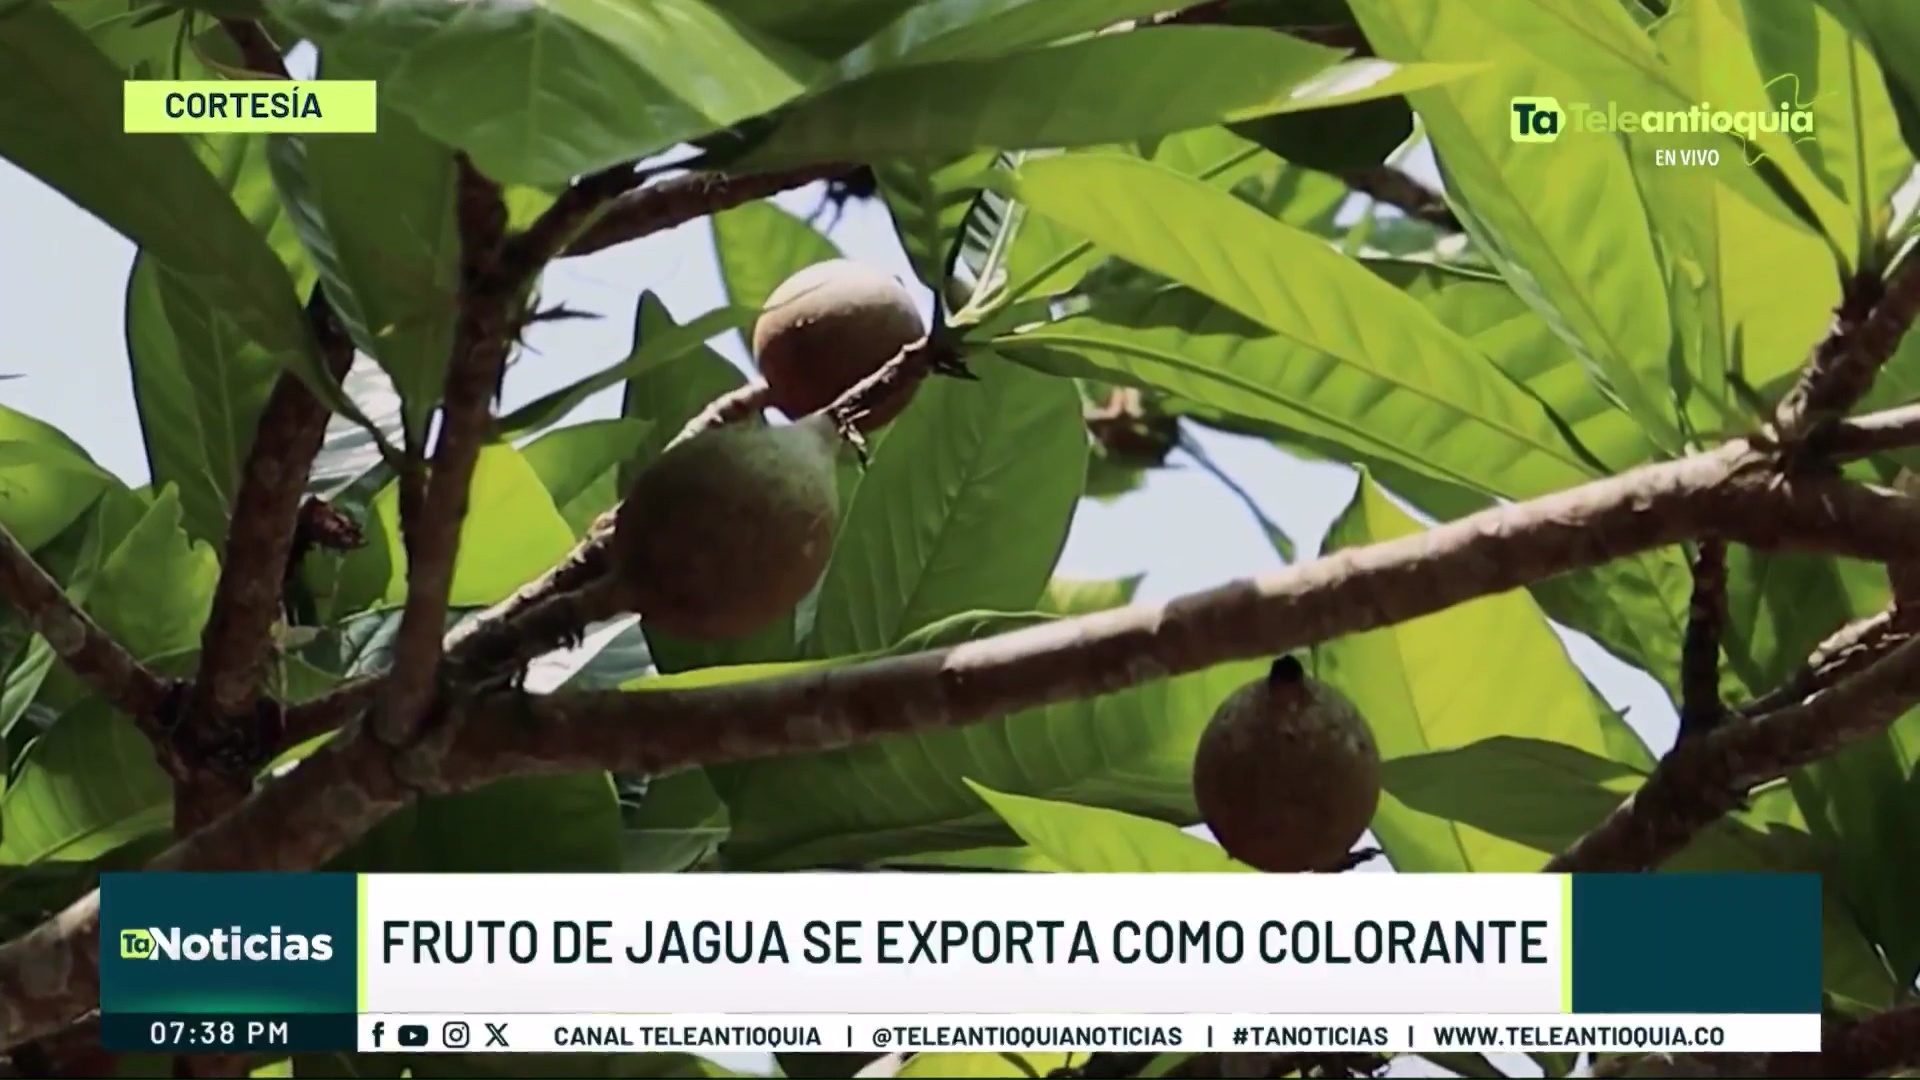 Fruto de jagua se exporta como colorante